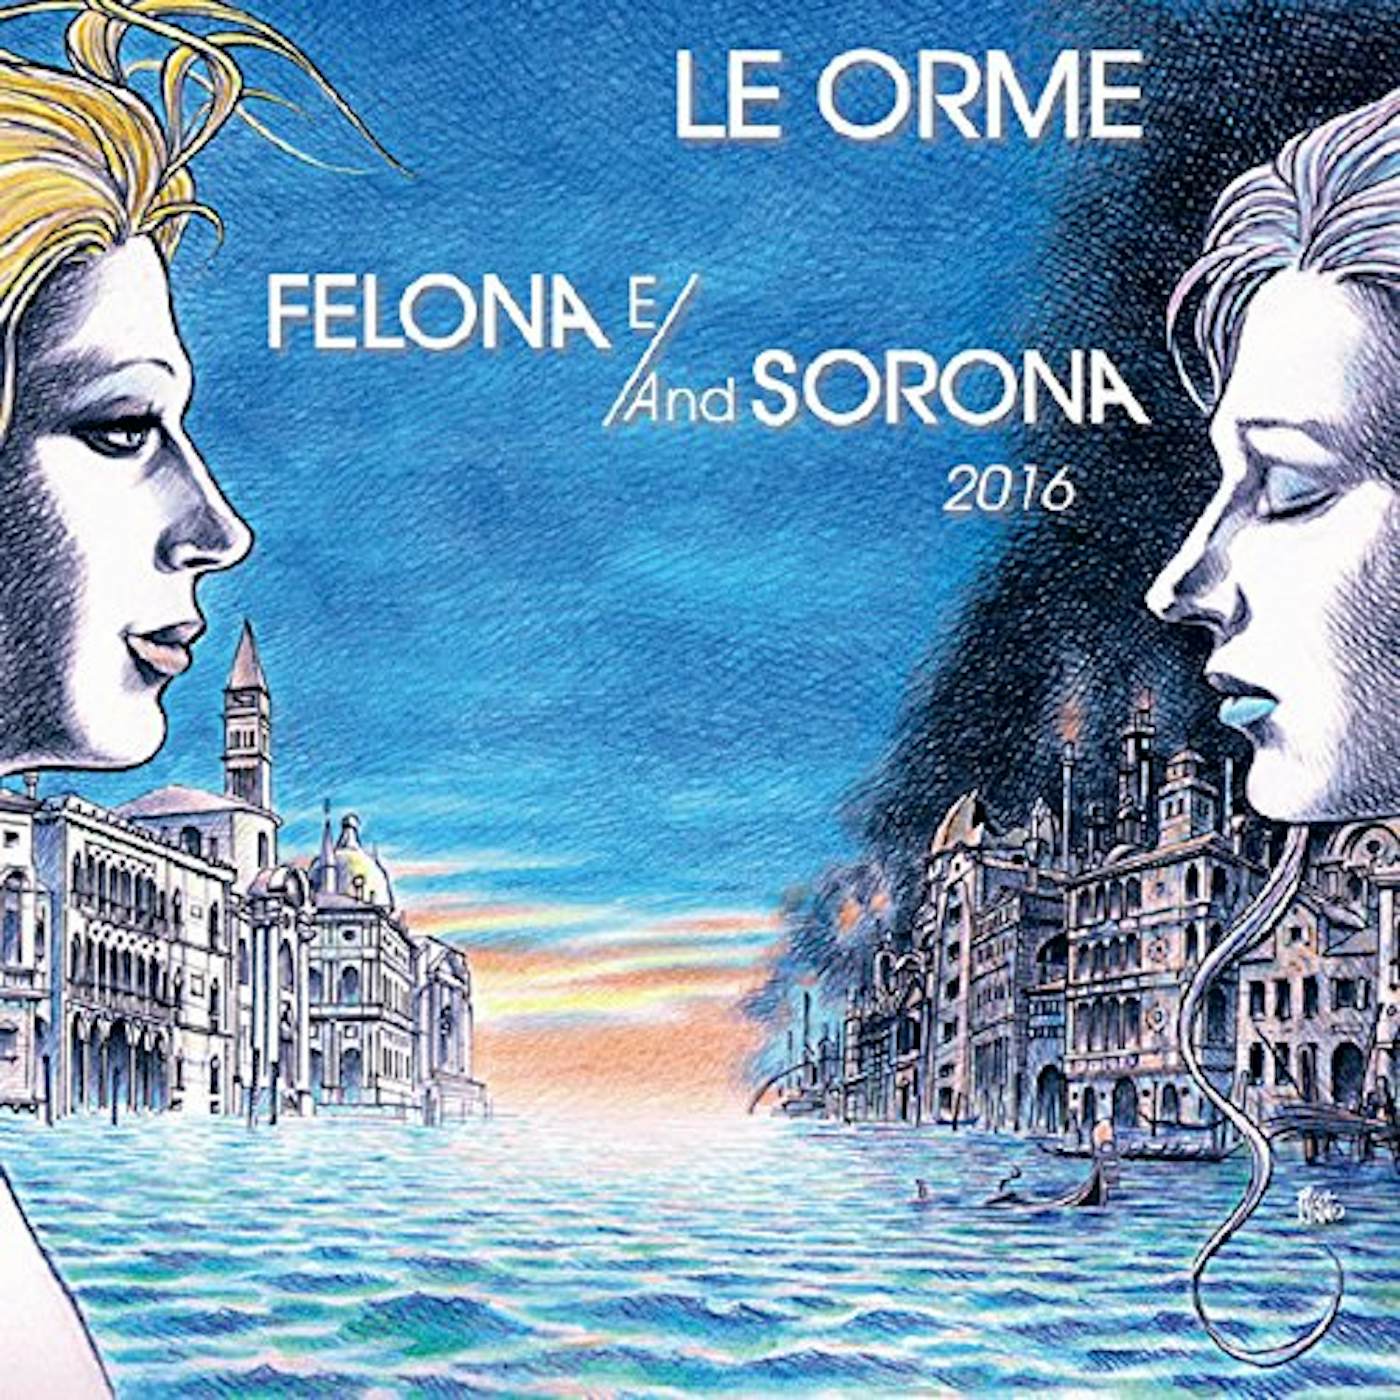 Le Orme FELONA E/AND SOLONA 2016 CD